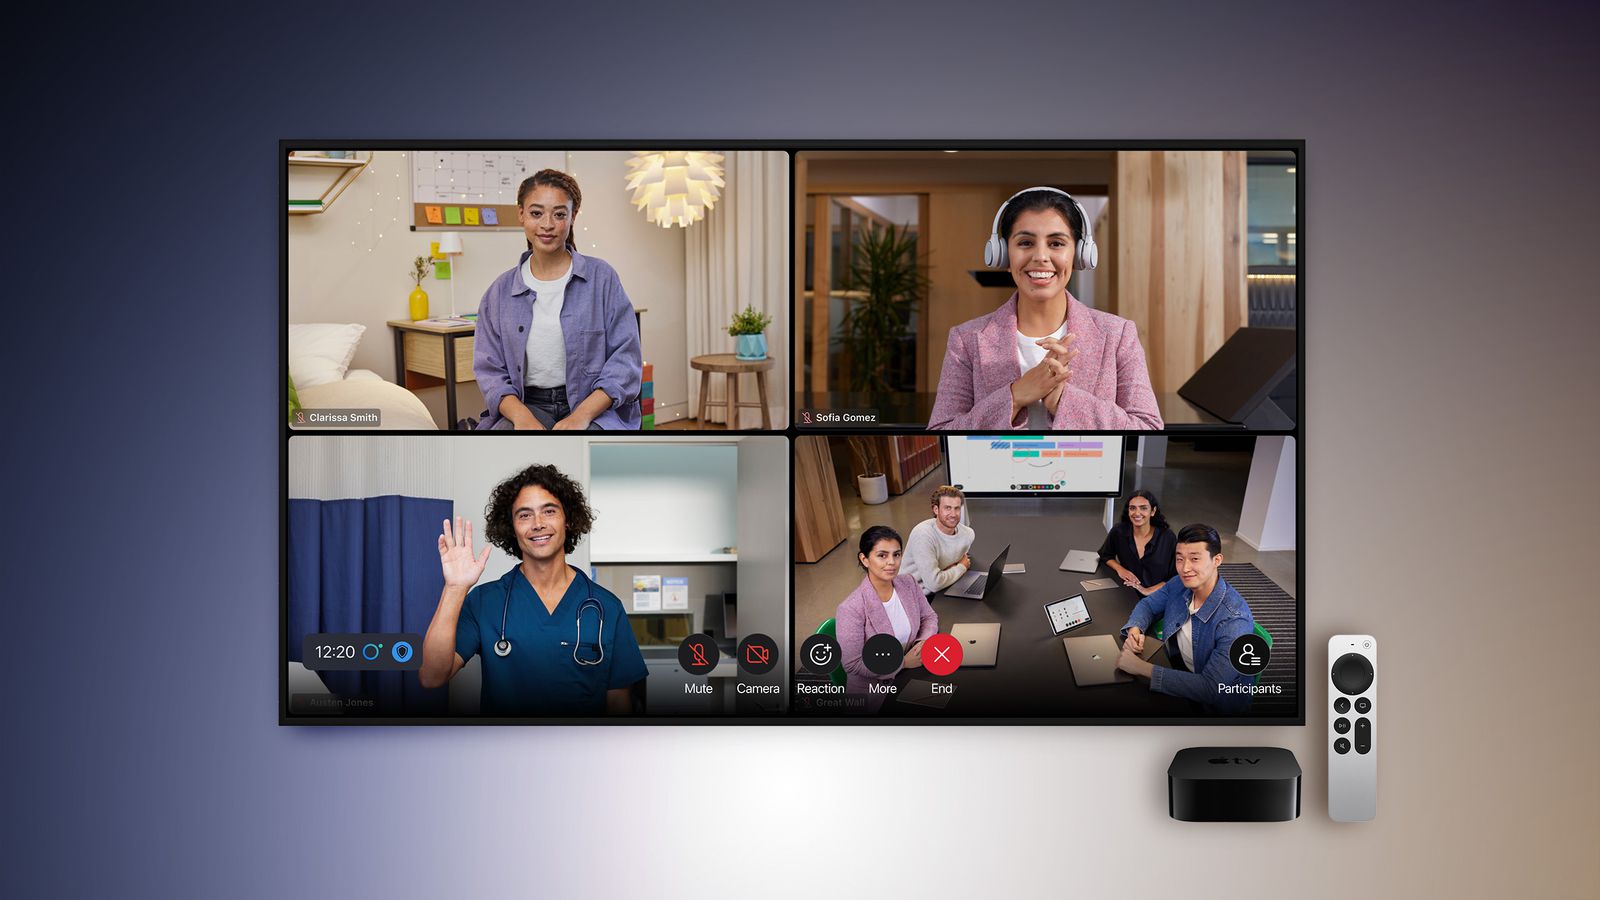 Приложение Webex скоро станет доступно для проведения видеоконференций на Apple TV